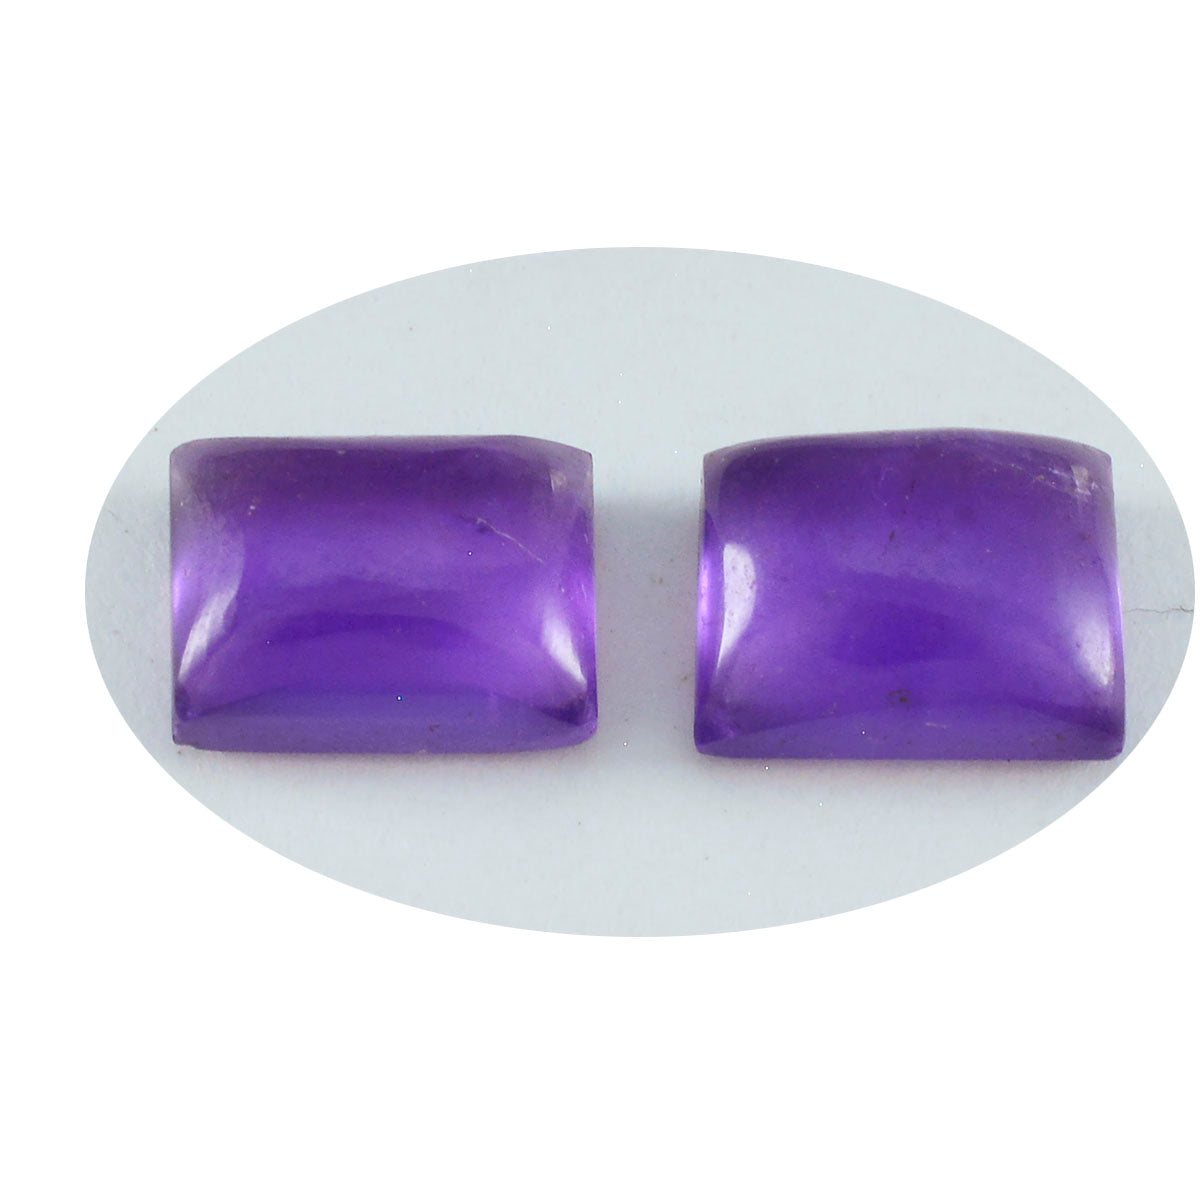 Riyogems 1PC Purple Amethyst Cabochon 7X9 mm Octagon Shape great Quality Stone